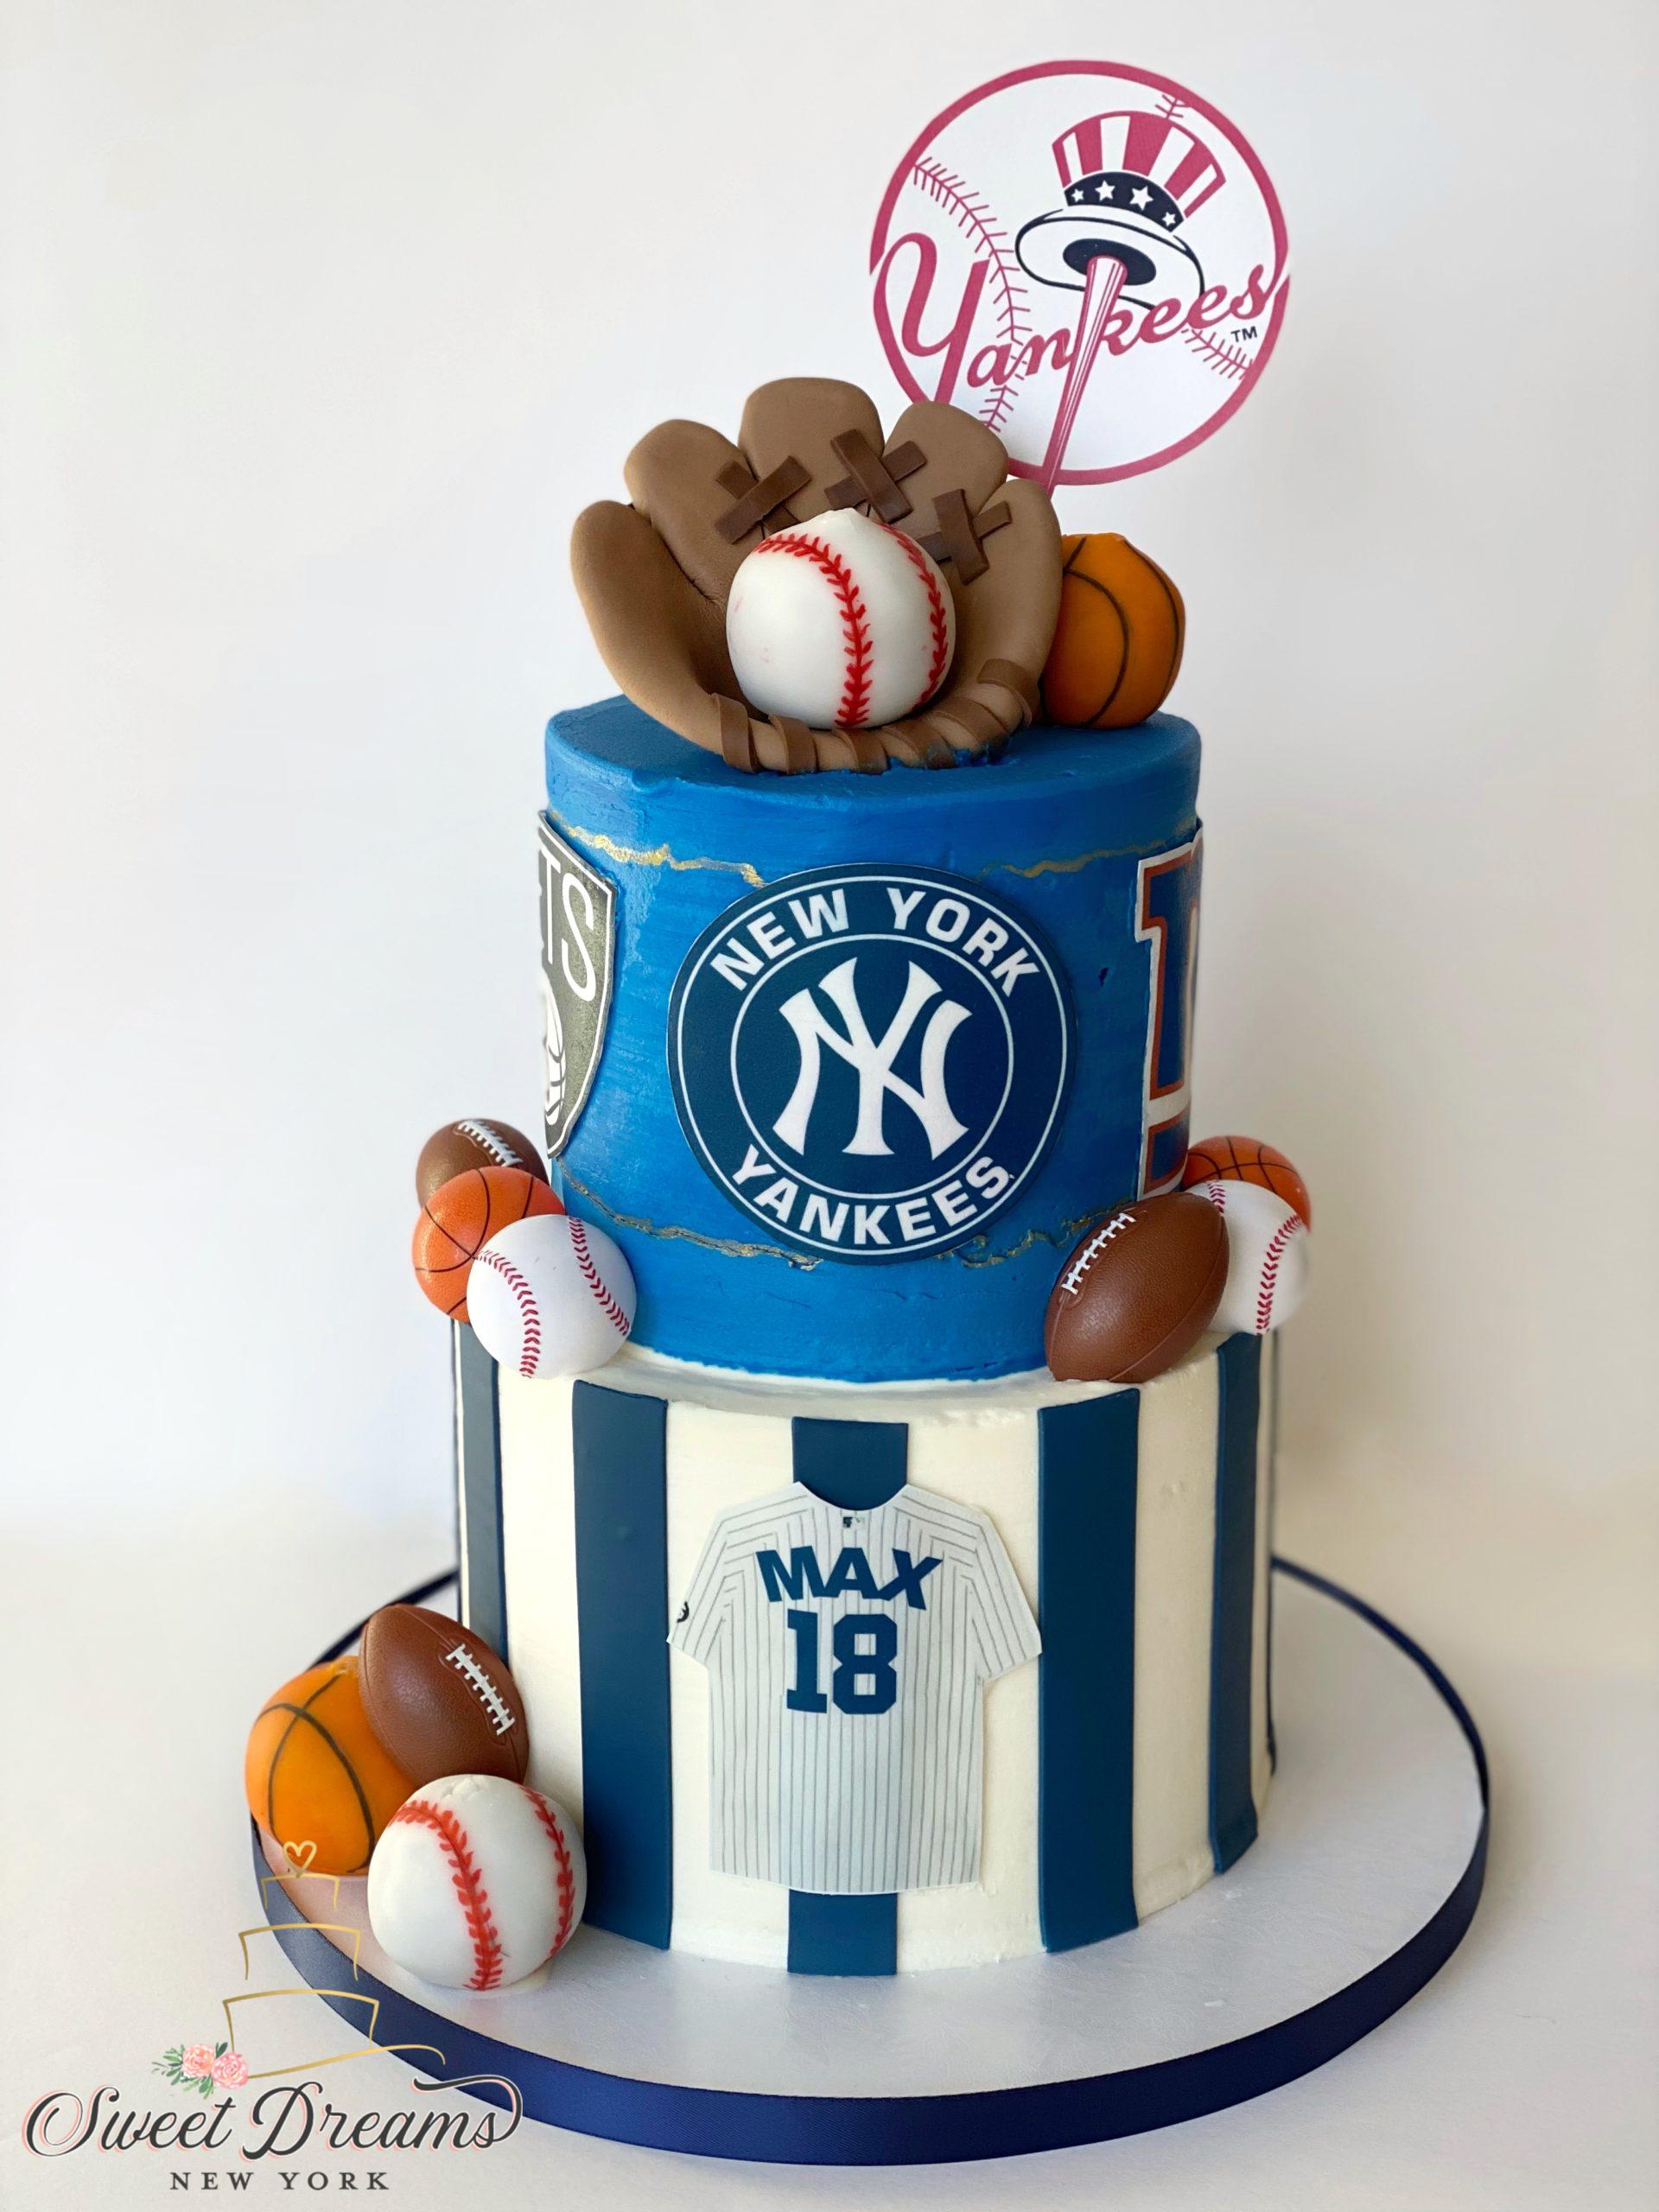 NY Yankees Cake Baseball mitt cake basketball footbal sports birthday cake Long Island NY custom cakes bakery NYC Sweet Dreams NY